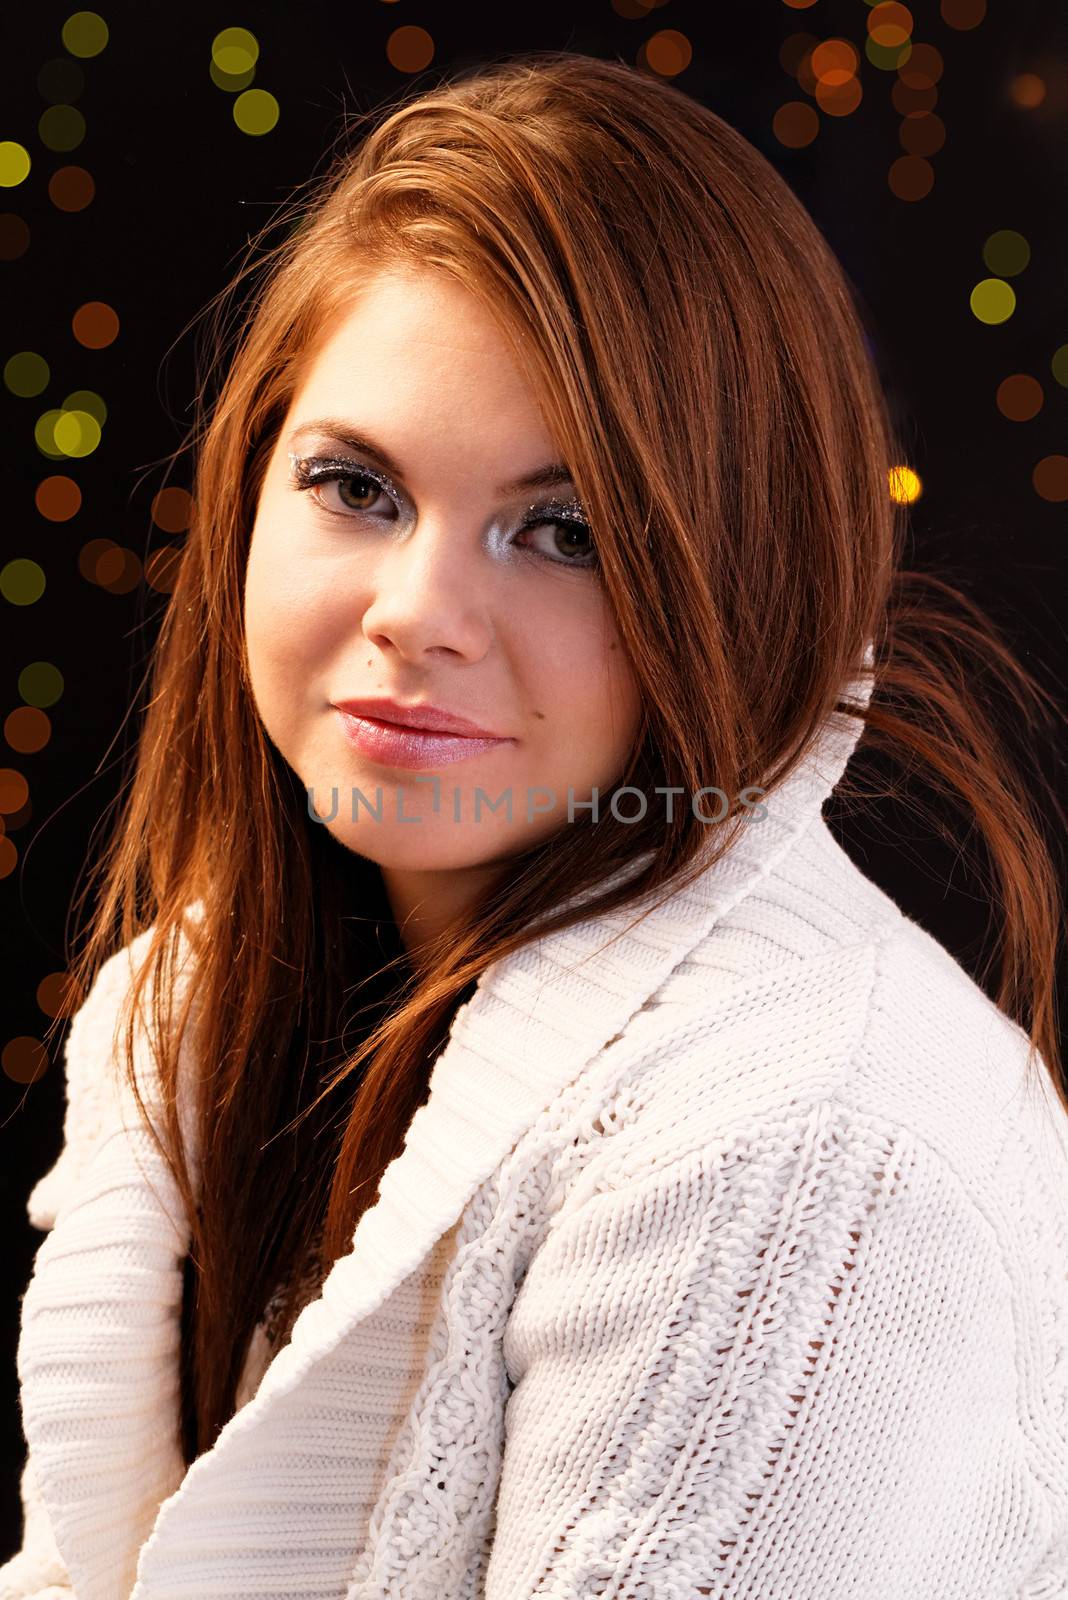 Friendly smiling young woman portrait studio shot